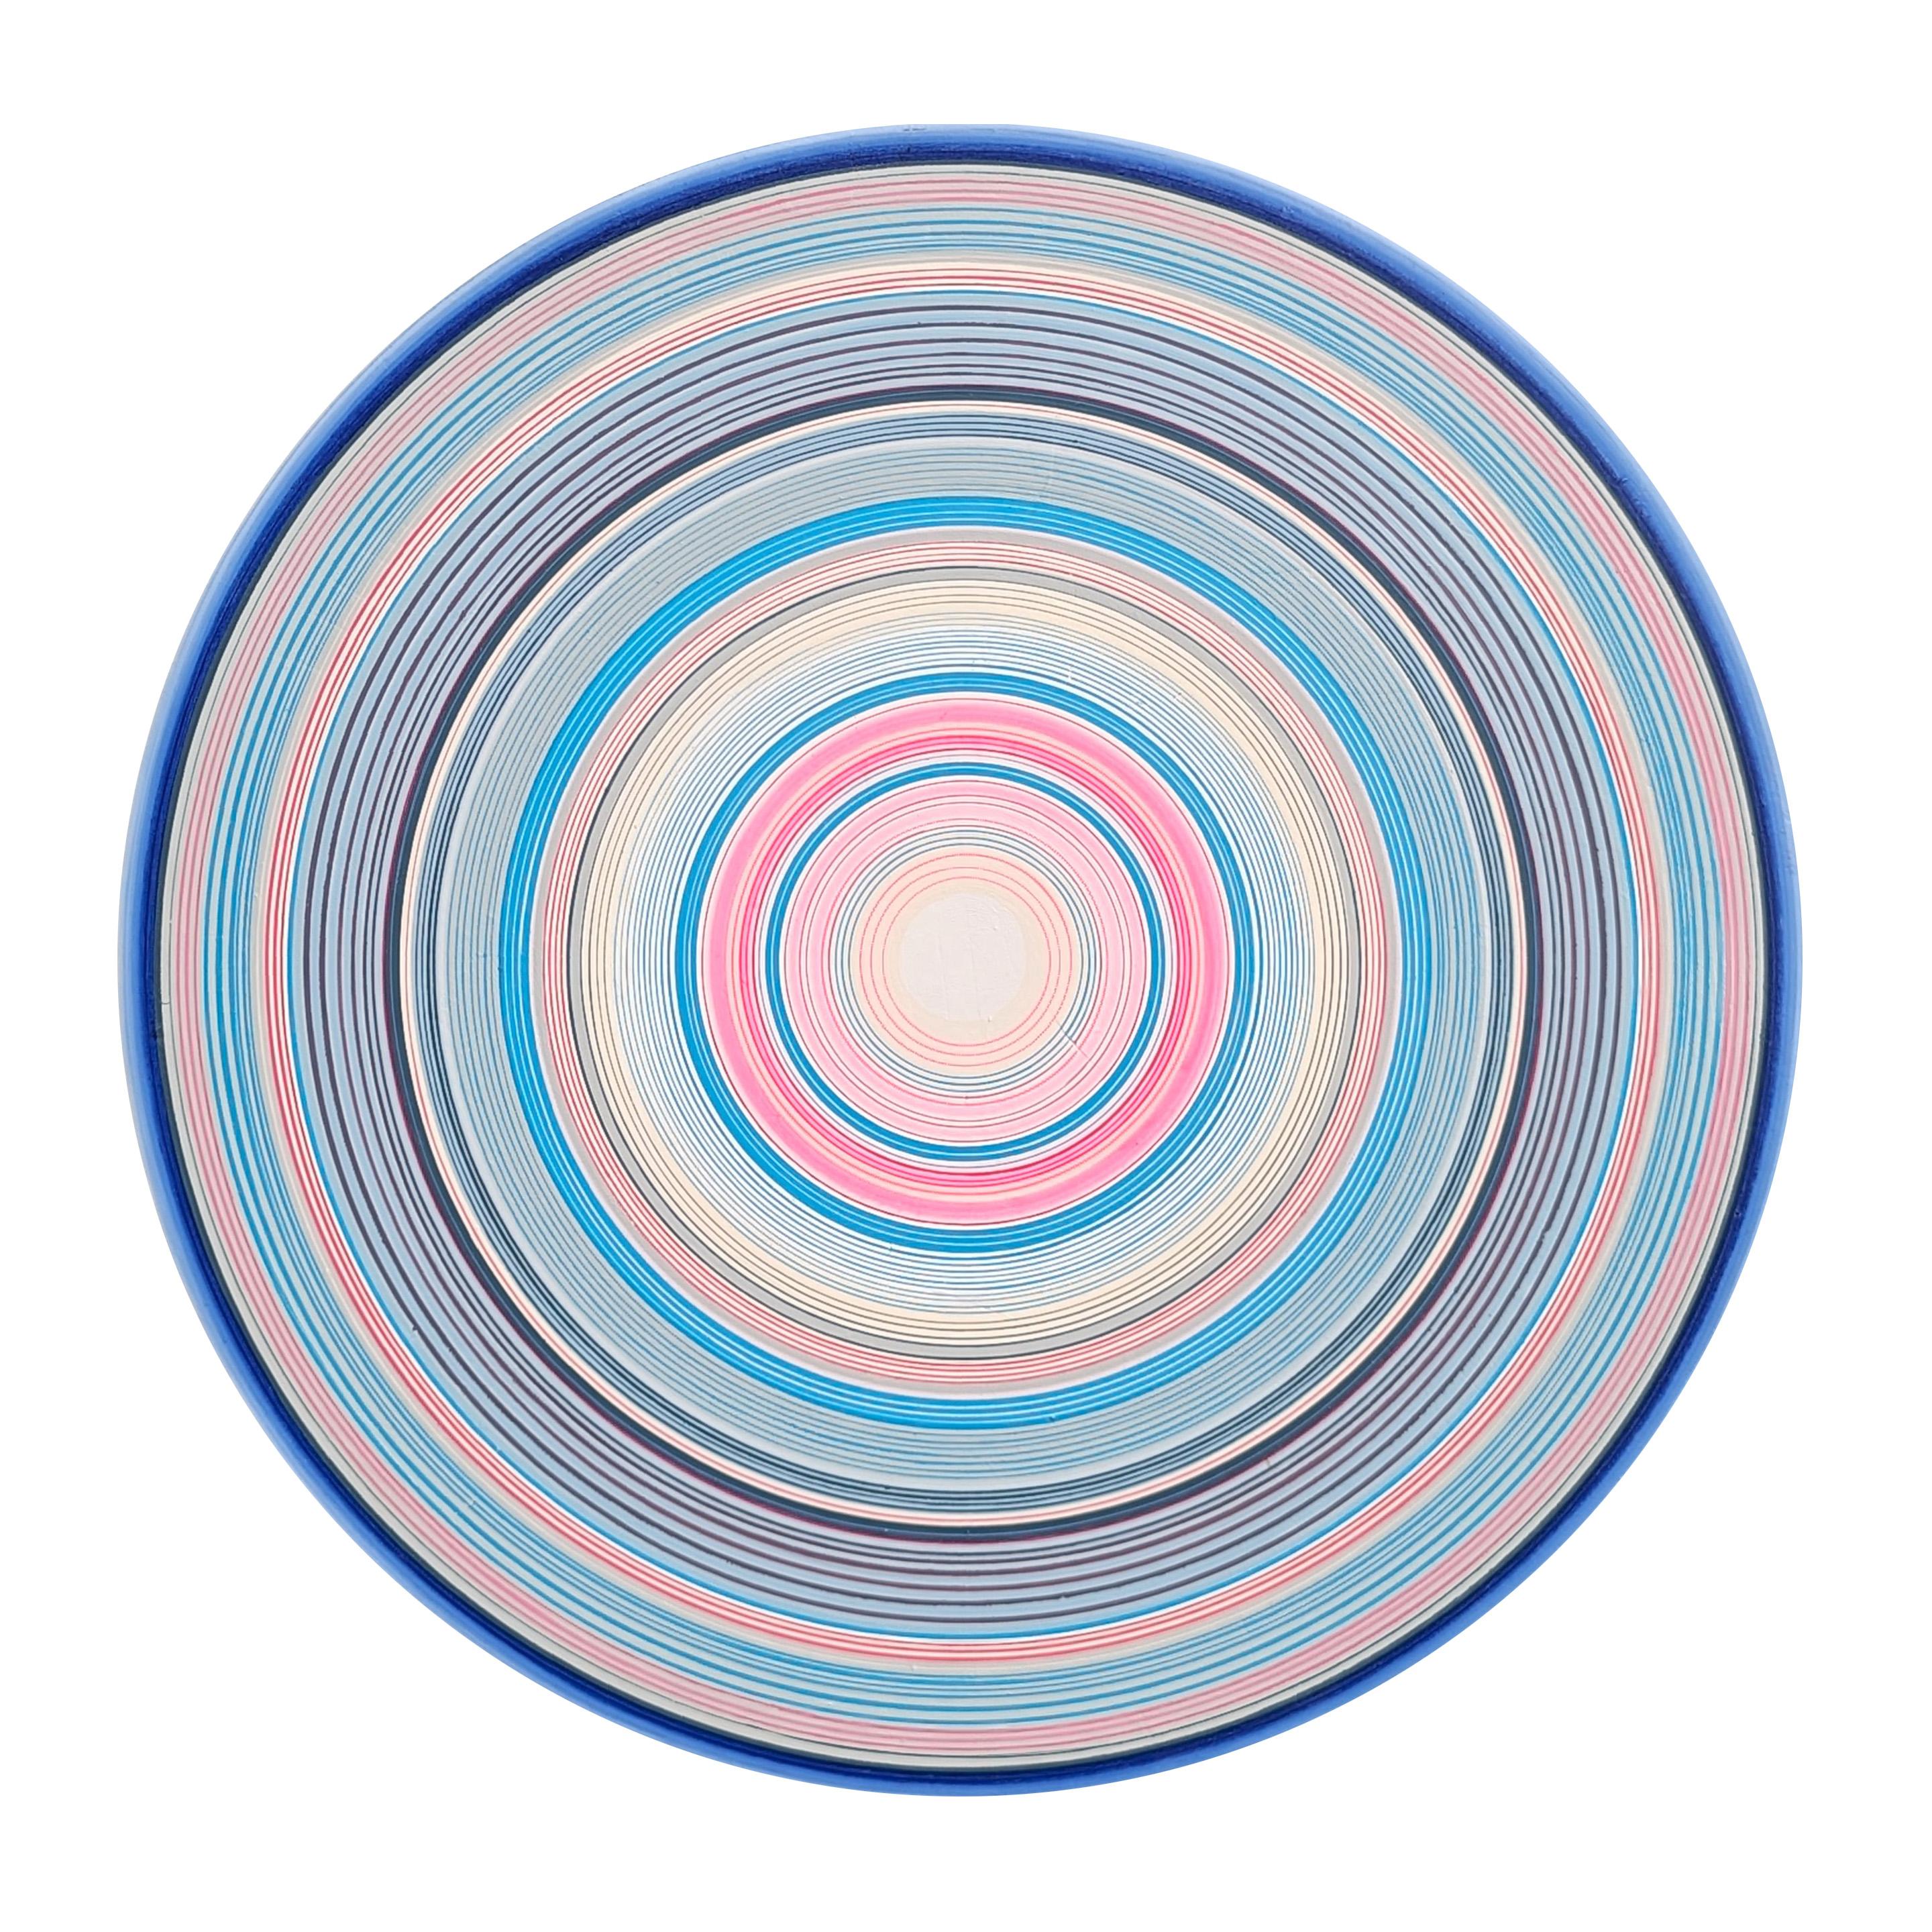 "Threads" Peinture abstraite contemporaine de cercles concentriques bleus, roses et blancs